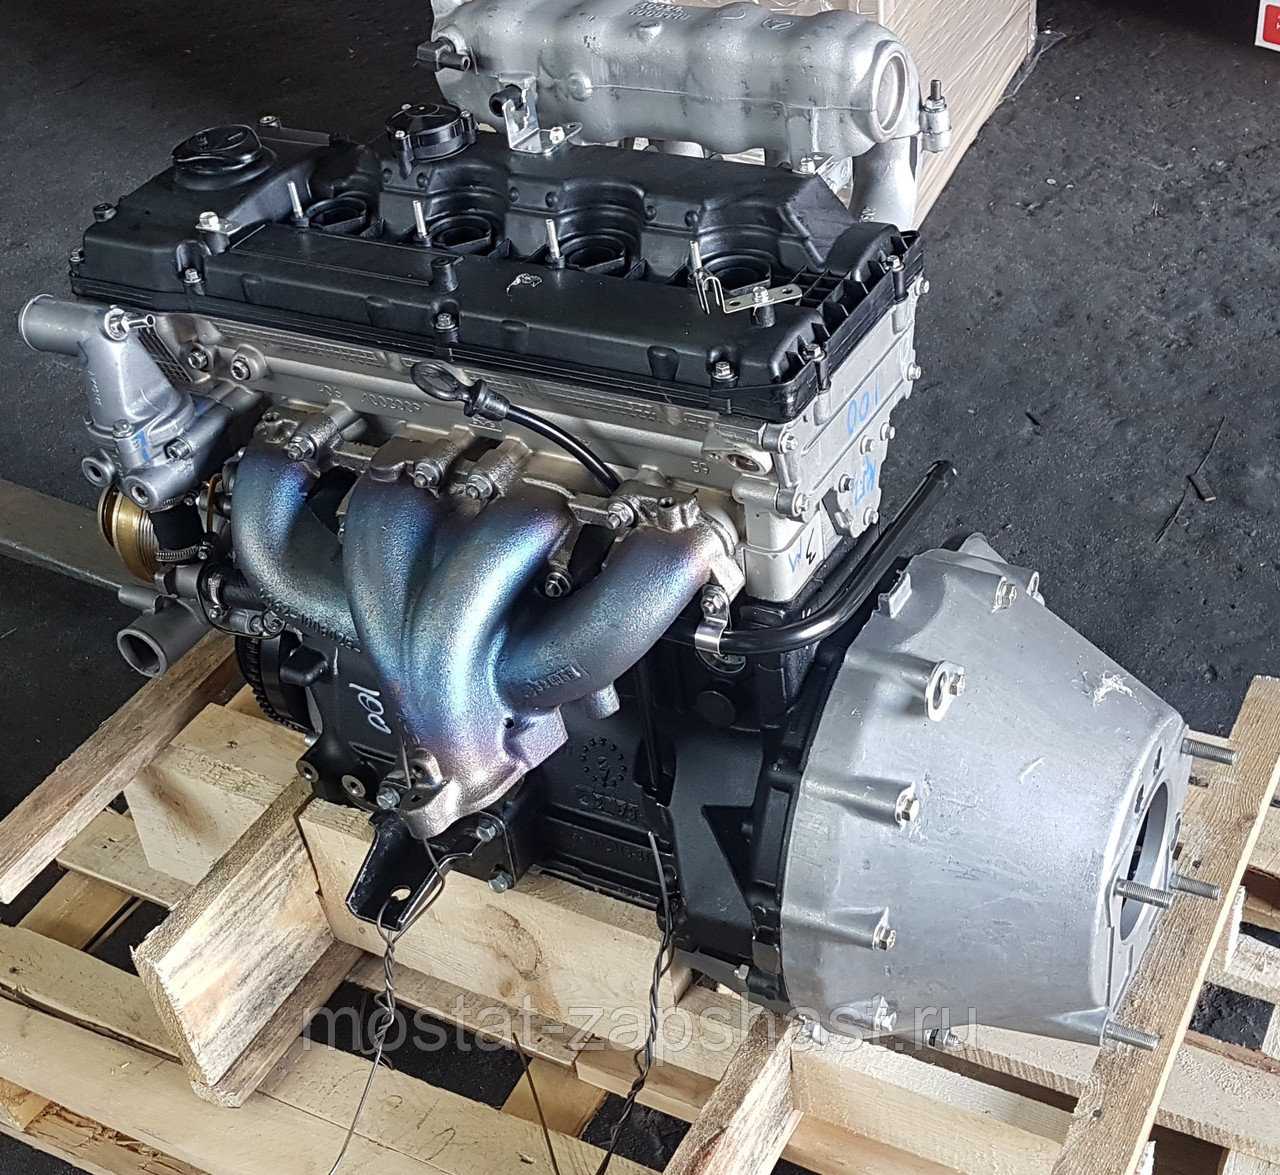 Двигатели змз-405, 406 , 409 ремонт, техническое обслуживание - купить автокнигу «двигатели змз 405, 406 , 409 устройство, ремонт и техническое обслуживание»